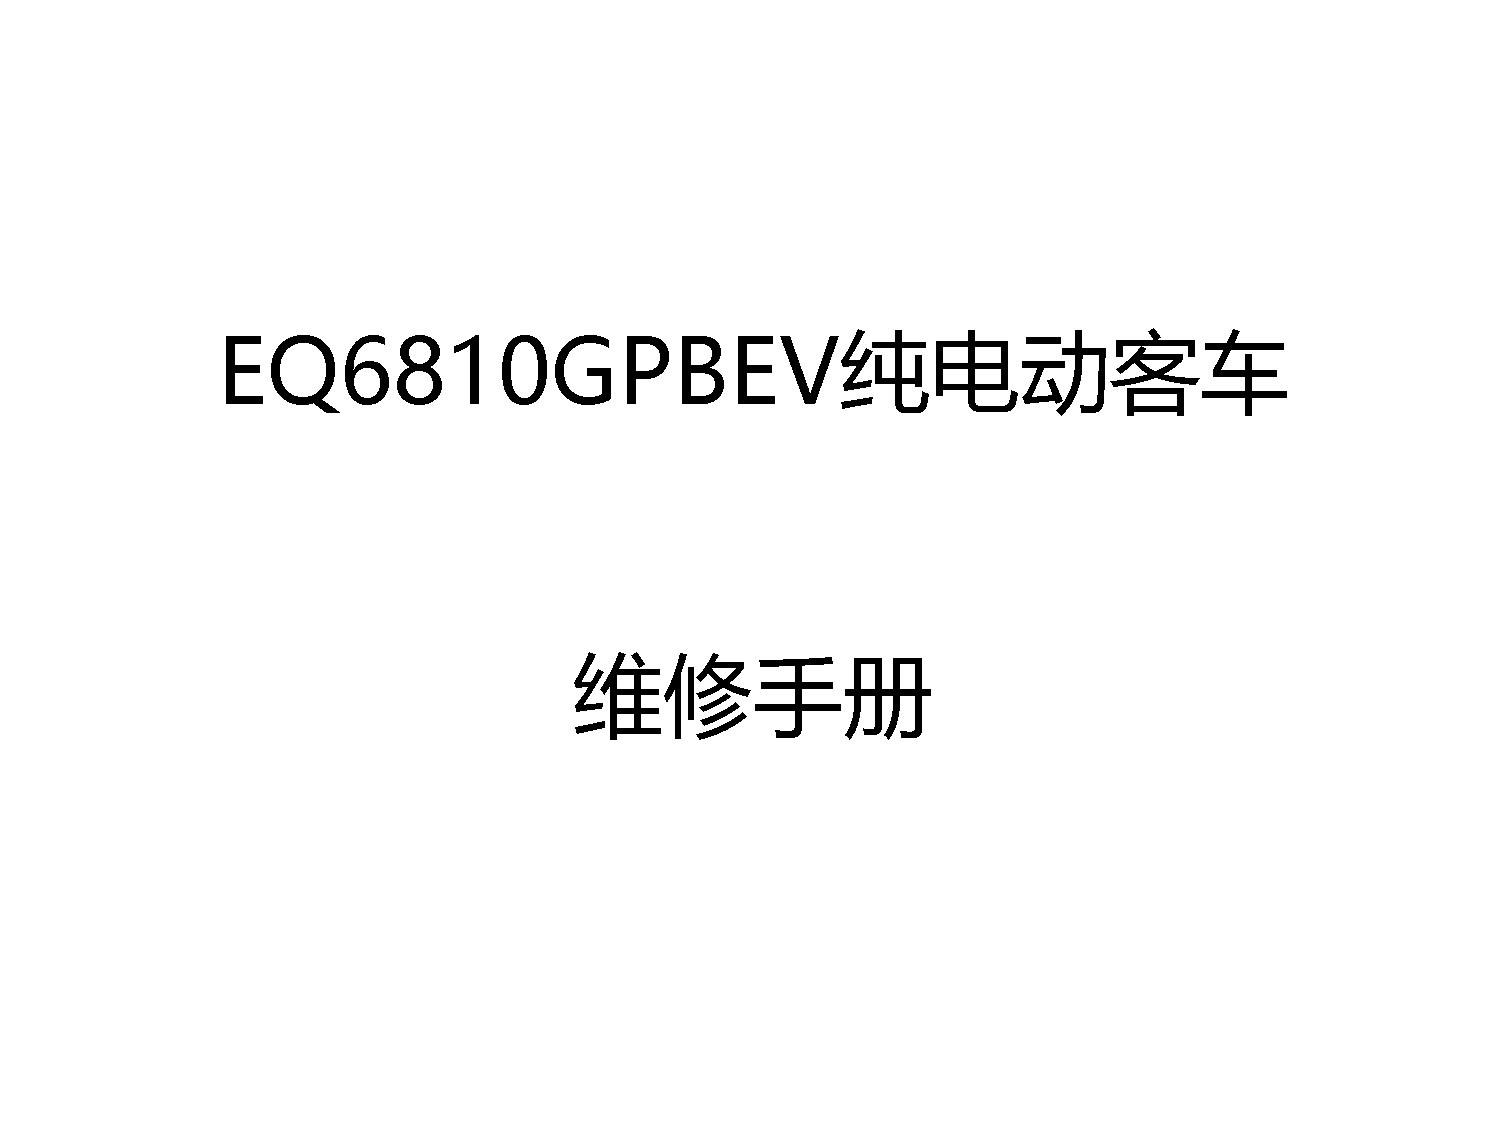 東風云汽EQ6810GPBEV純電動客車維修手冊